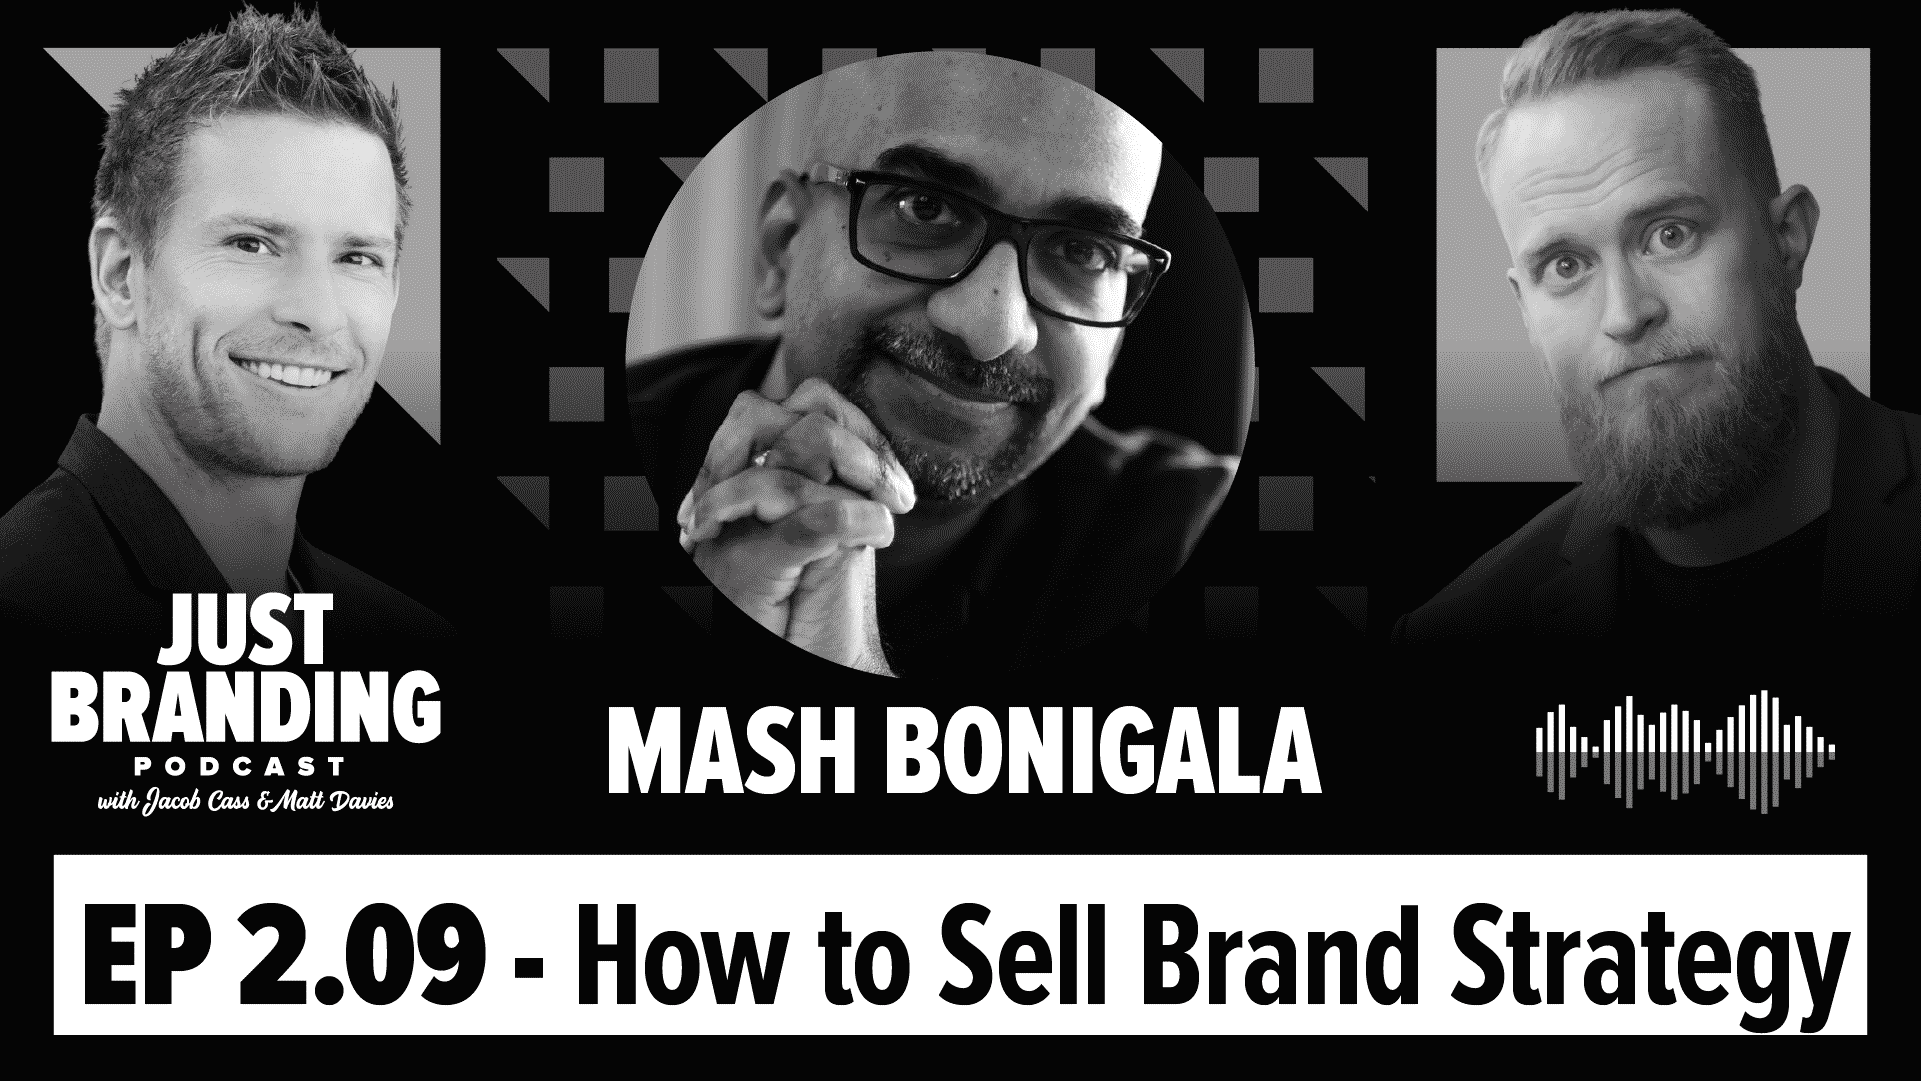 Mash Bonigala Podcast